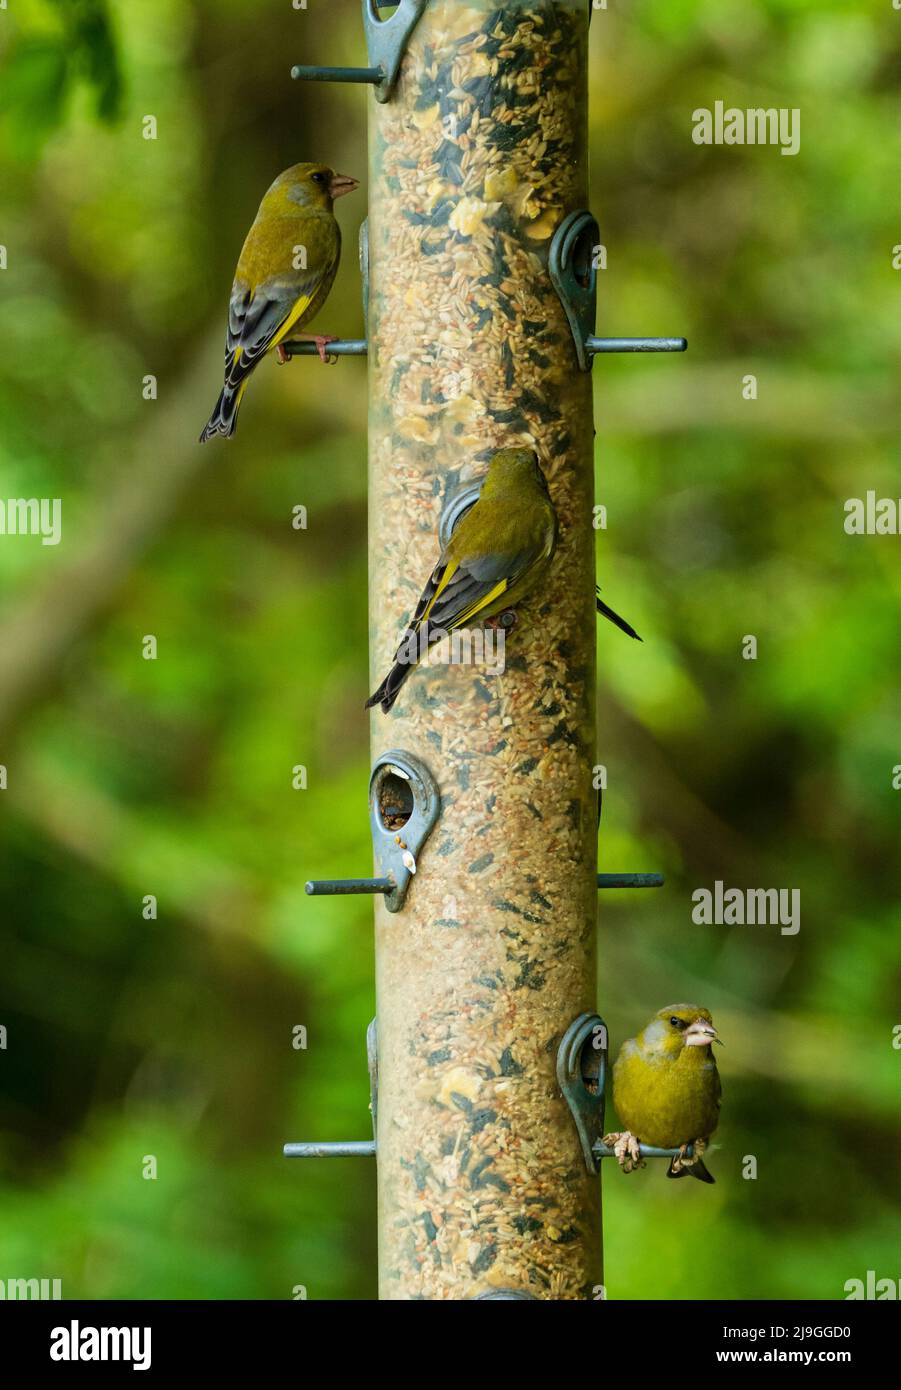 Trio di verdfinches autoctoni del Regno Unito, giallo e verde, Chloris chloris, che si nutrono di una miscela di semi di girasole e semi di semi di girasole Foto Stock